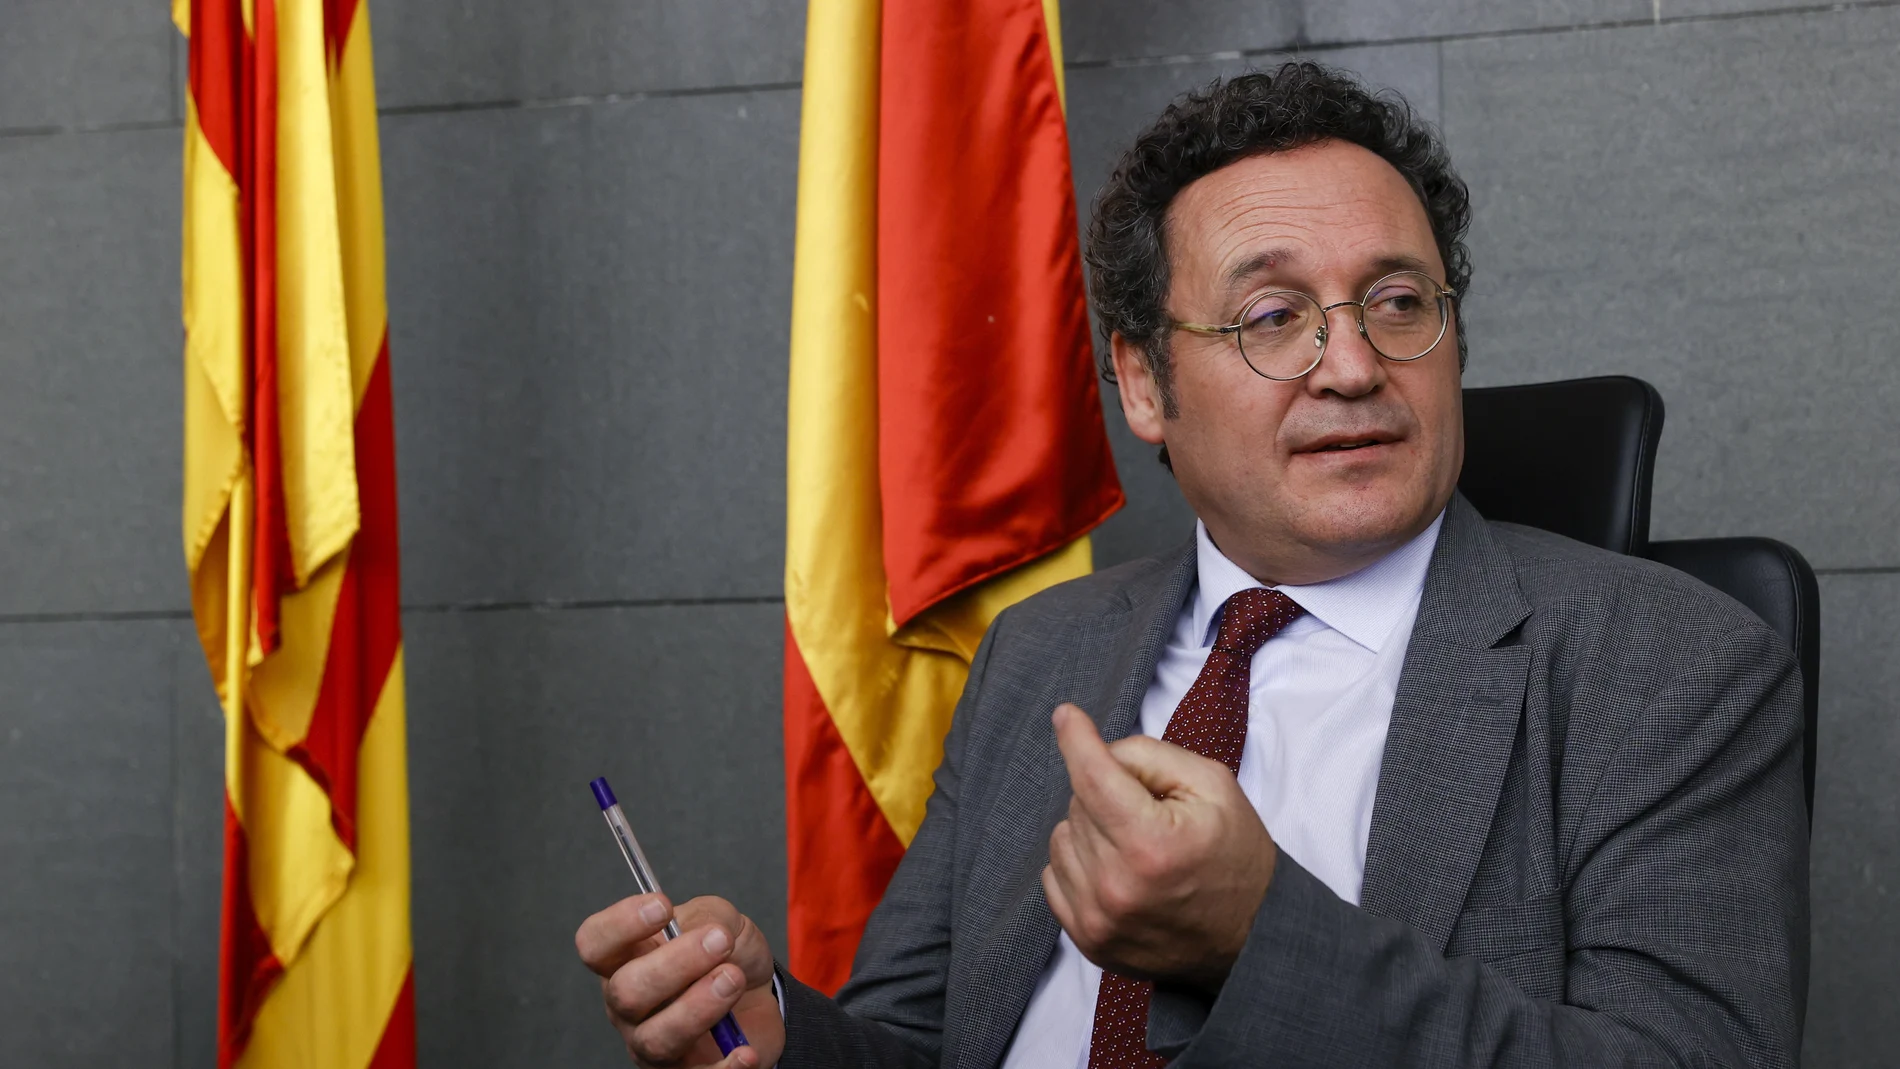 El fiscal general del Estado, Álvaro García Ortiz, momentos antes de presidir la Junta de Fiscales celebrada este miércoles en la Ciutat de la Justicia de Barcelona.